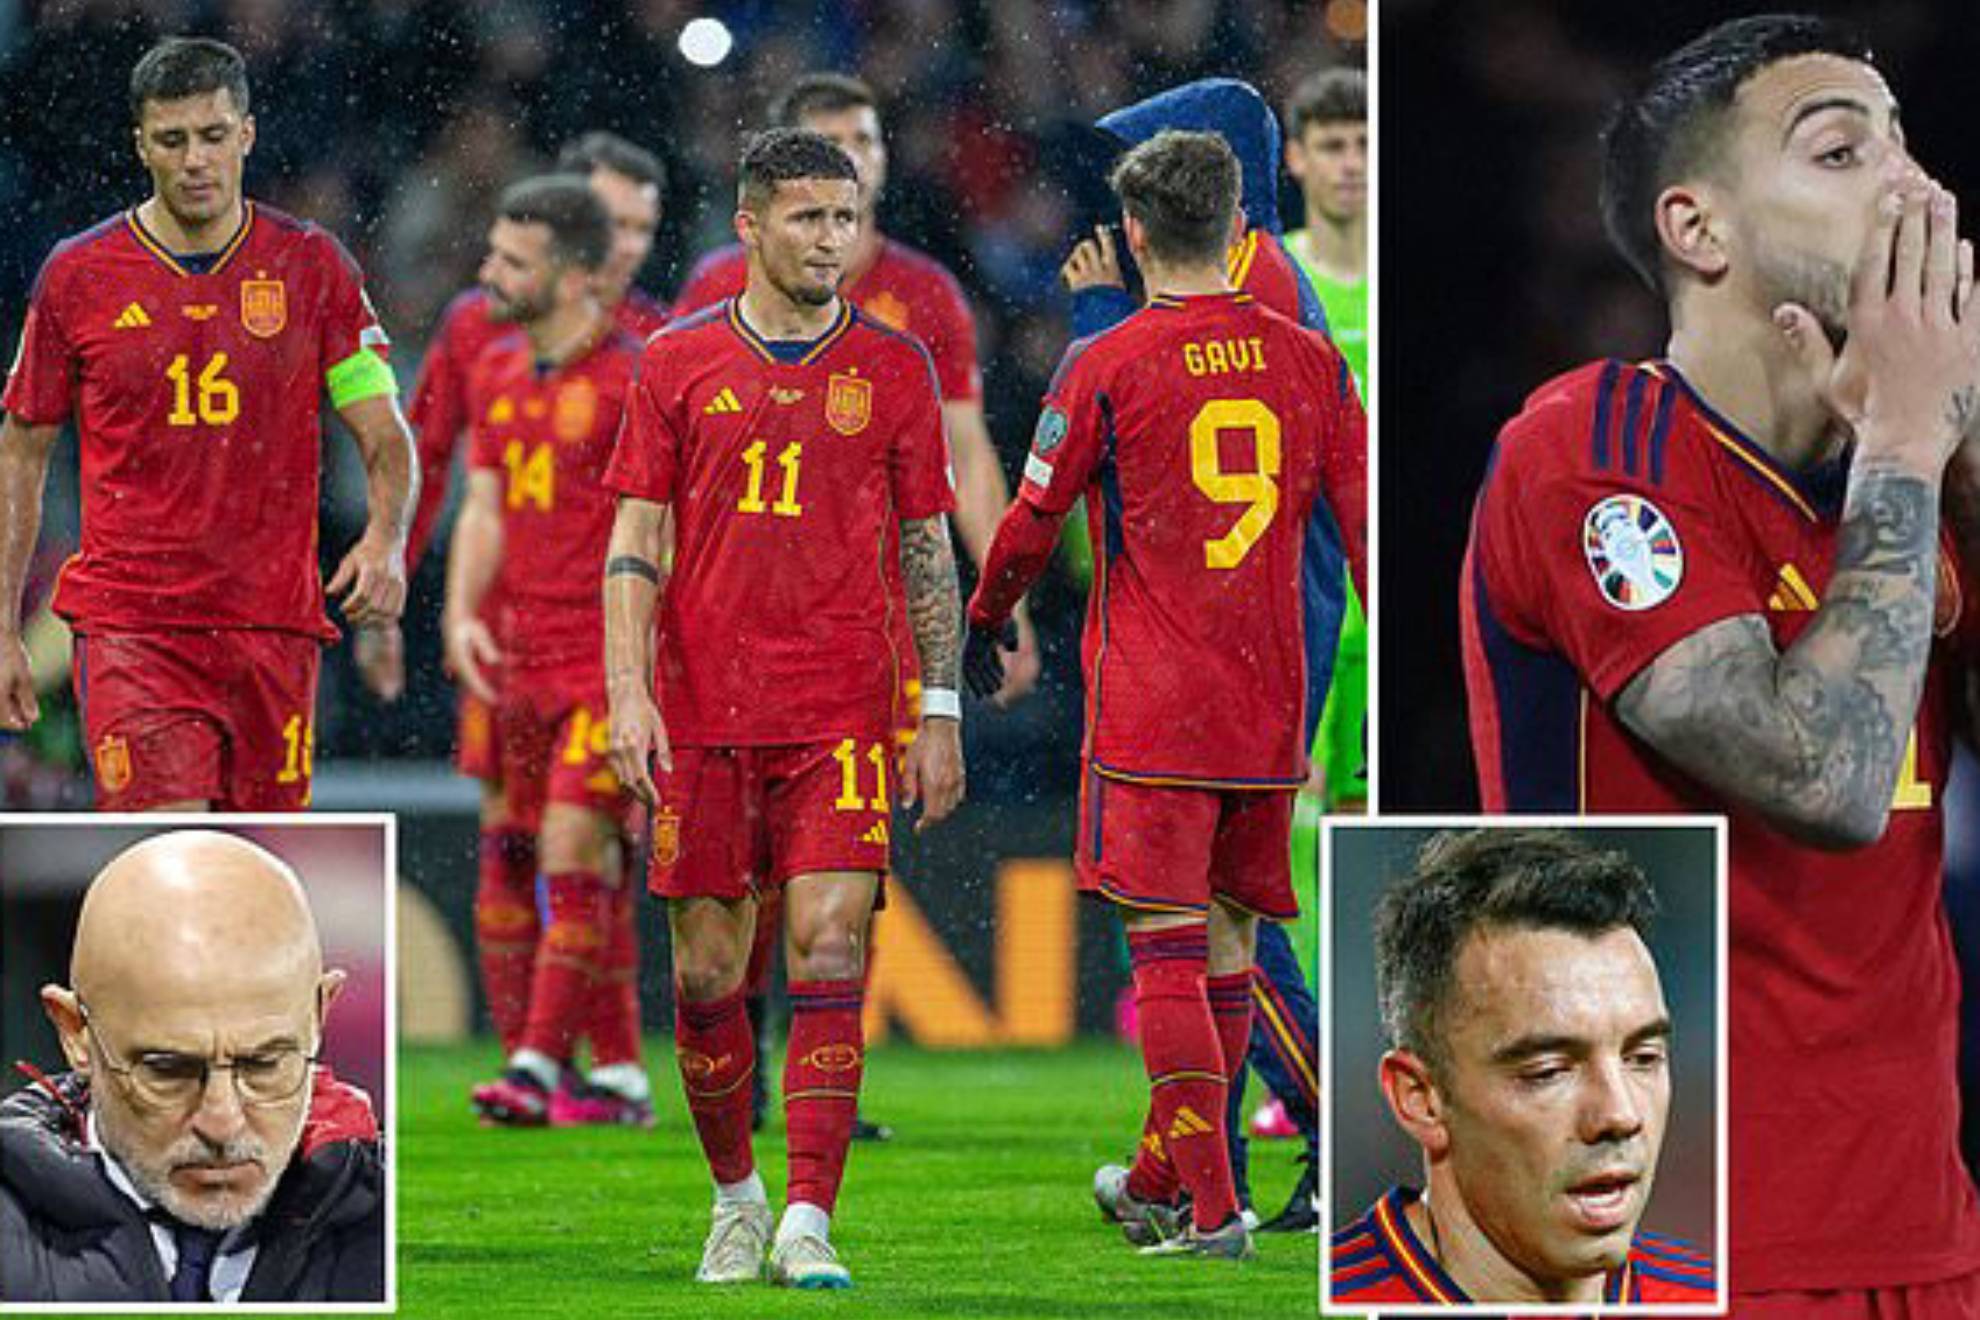 Dura crítica a la selección española en Inglaterra por "sus escasos recursos y jugadores fracasados en la Premier"